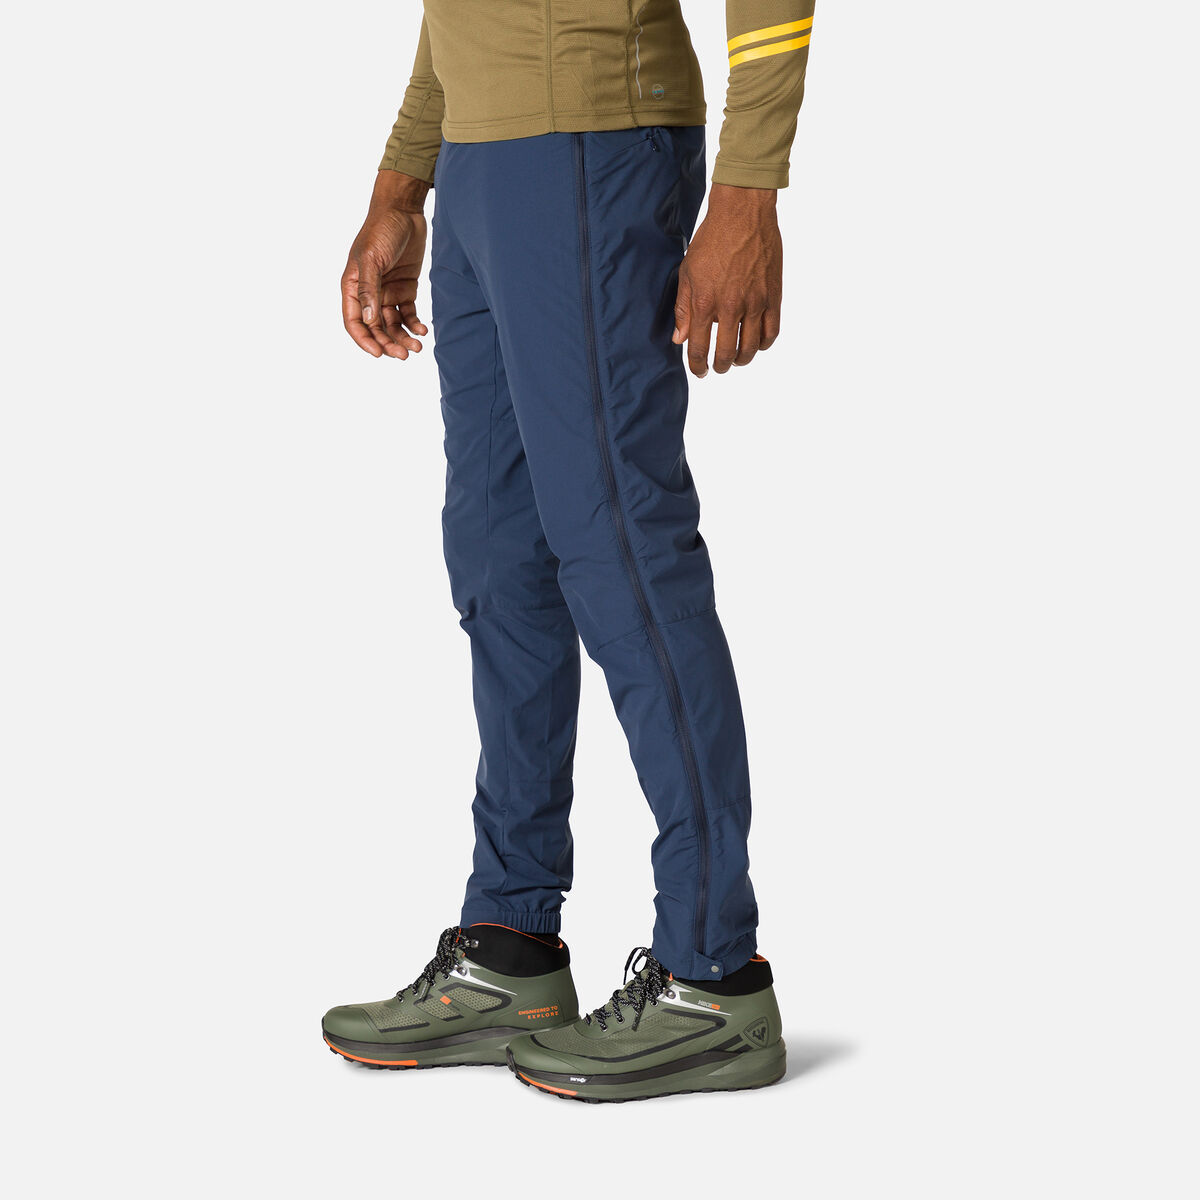 Pantalon de ski Active Versatile XC homme